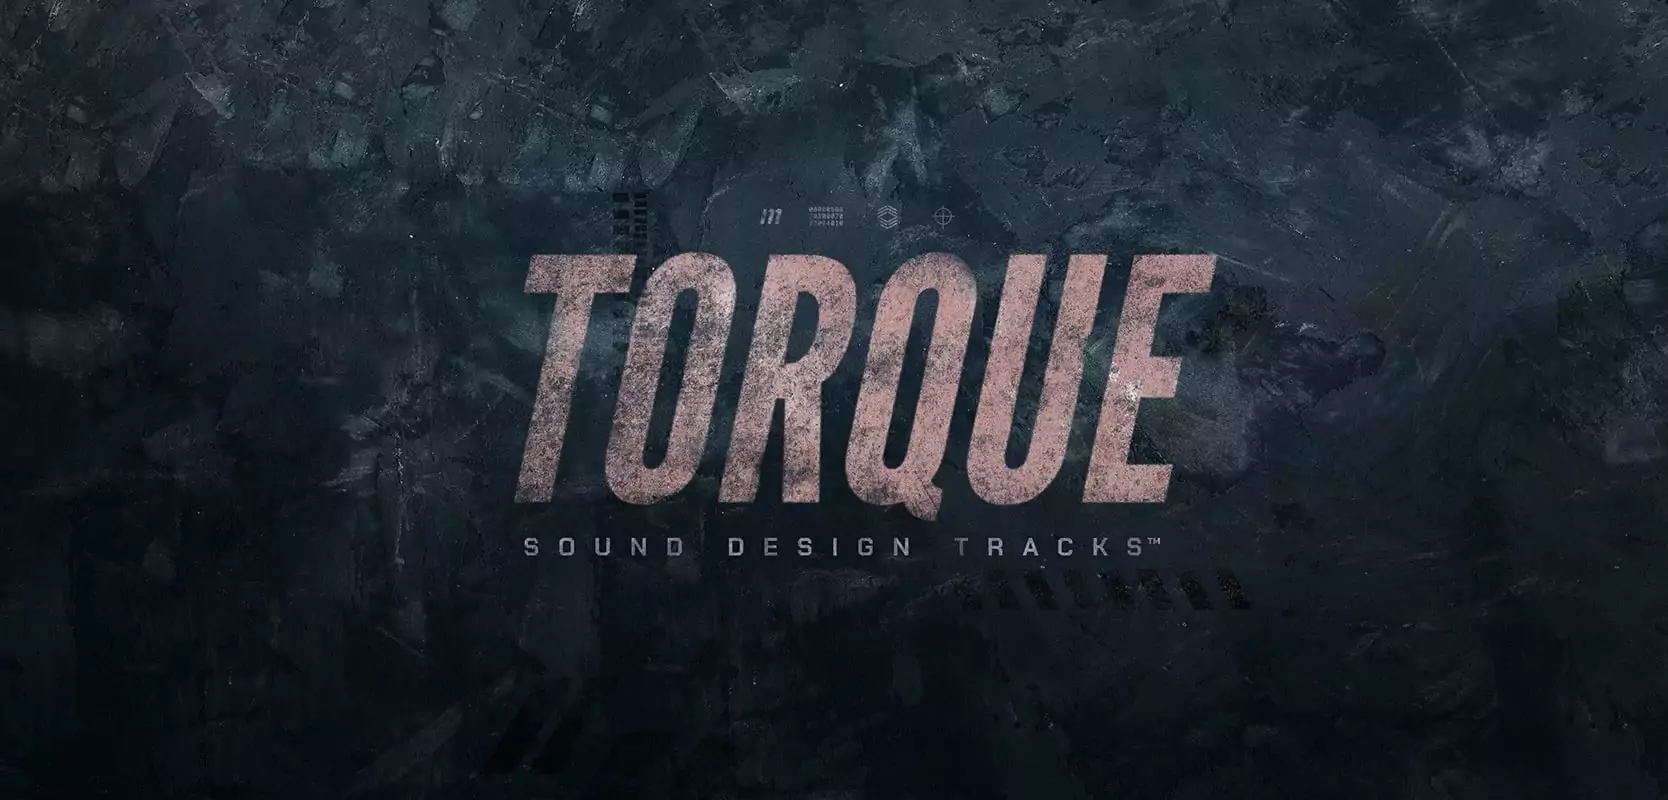 Torque Sound Design Tracks